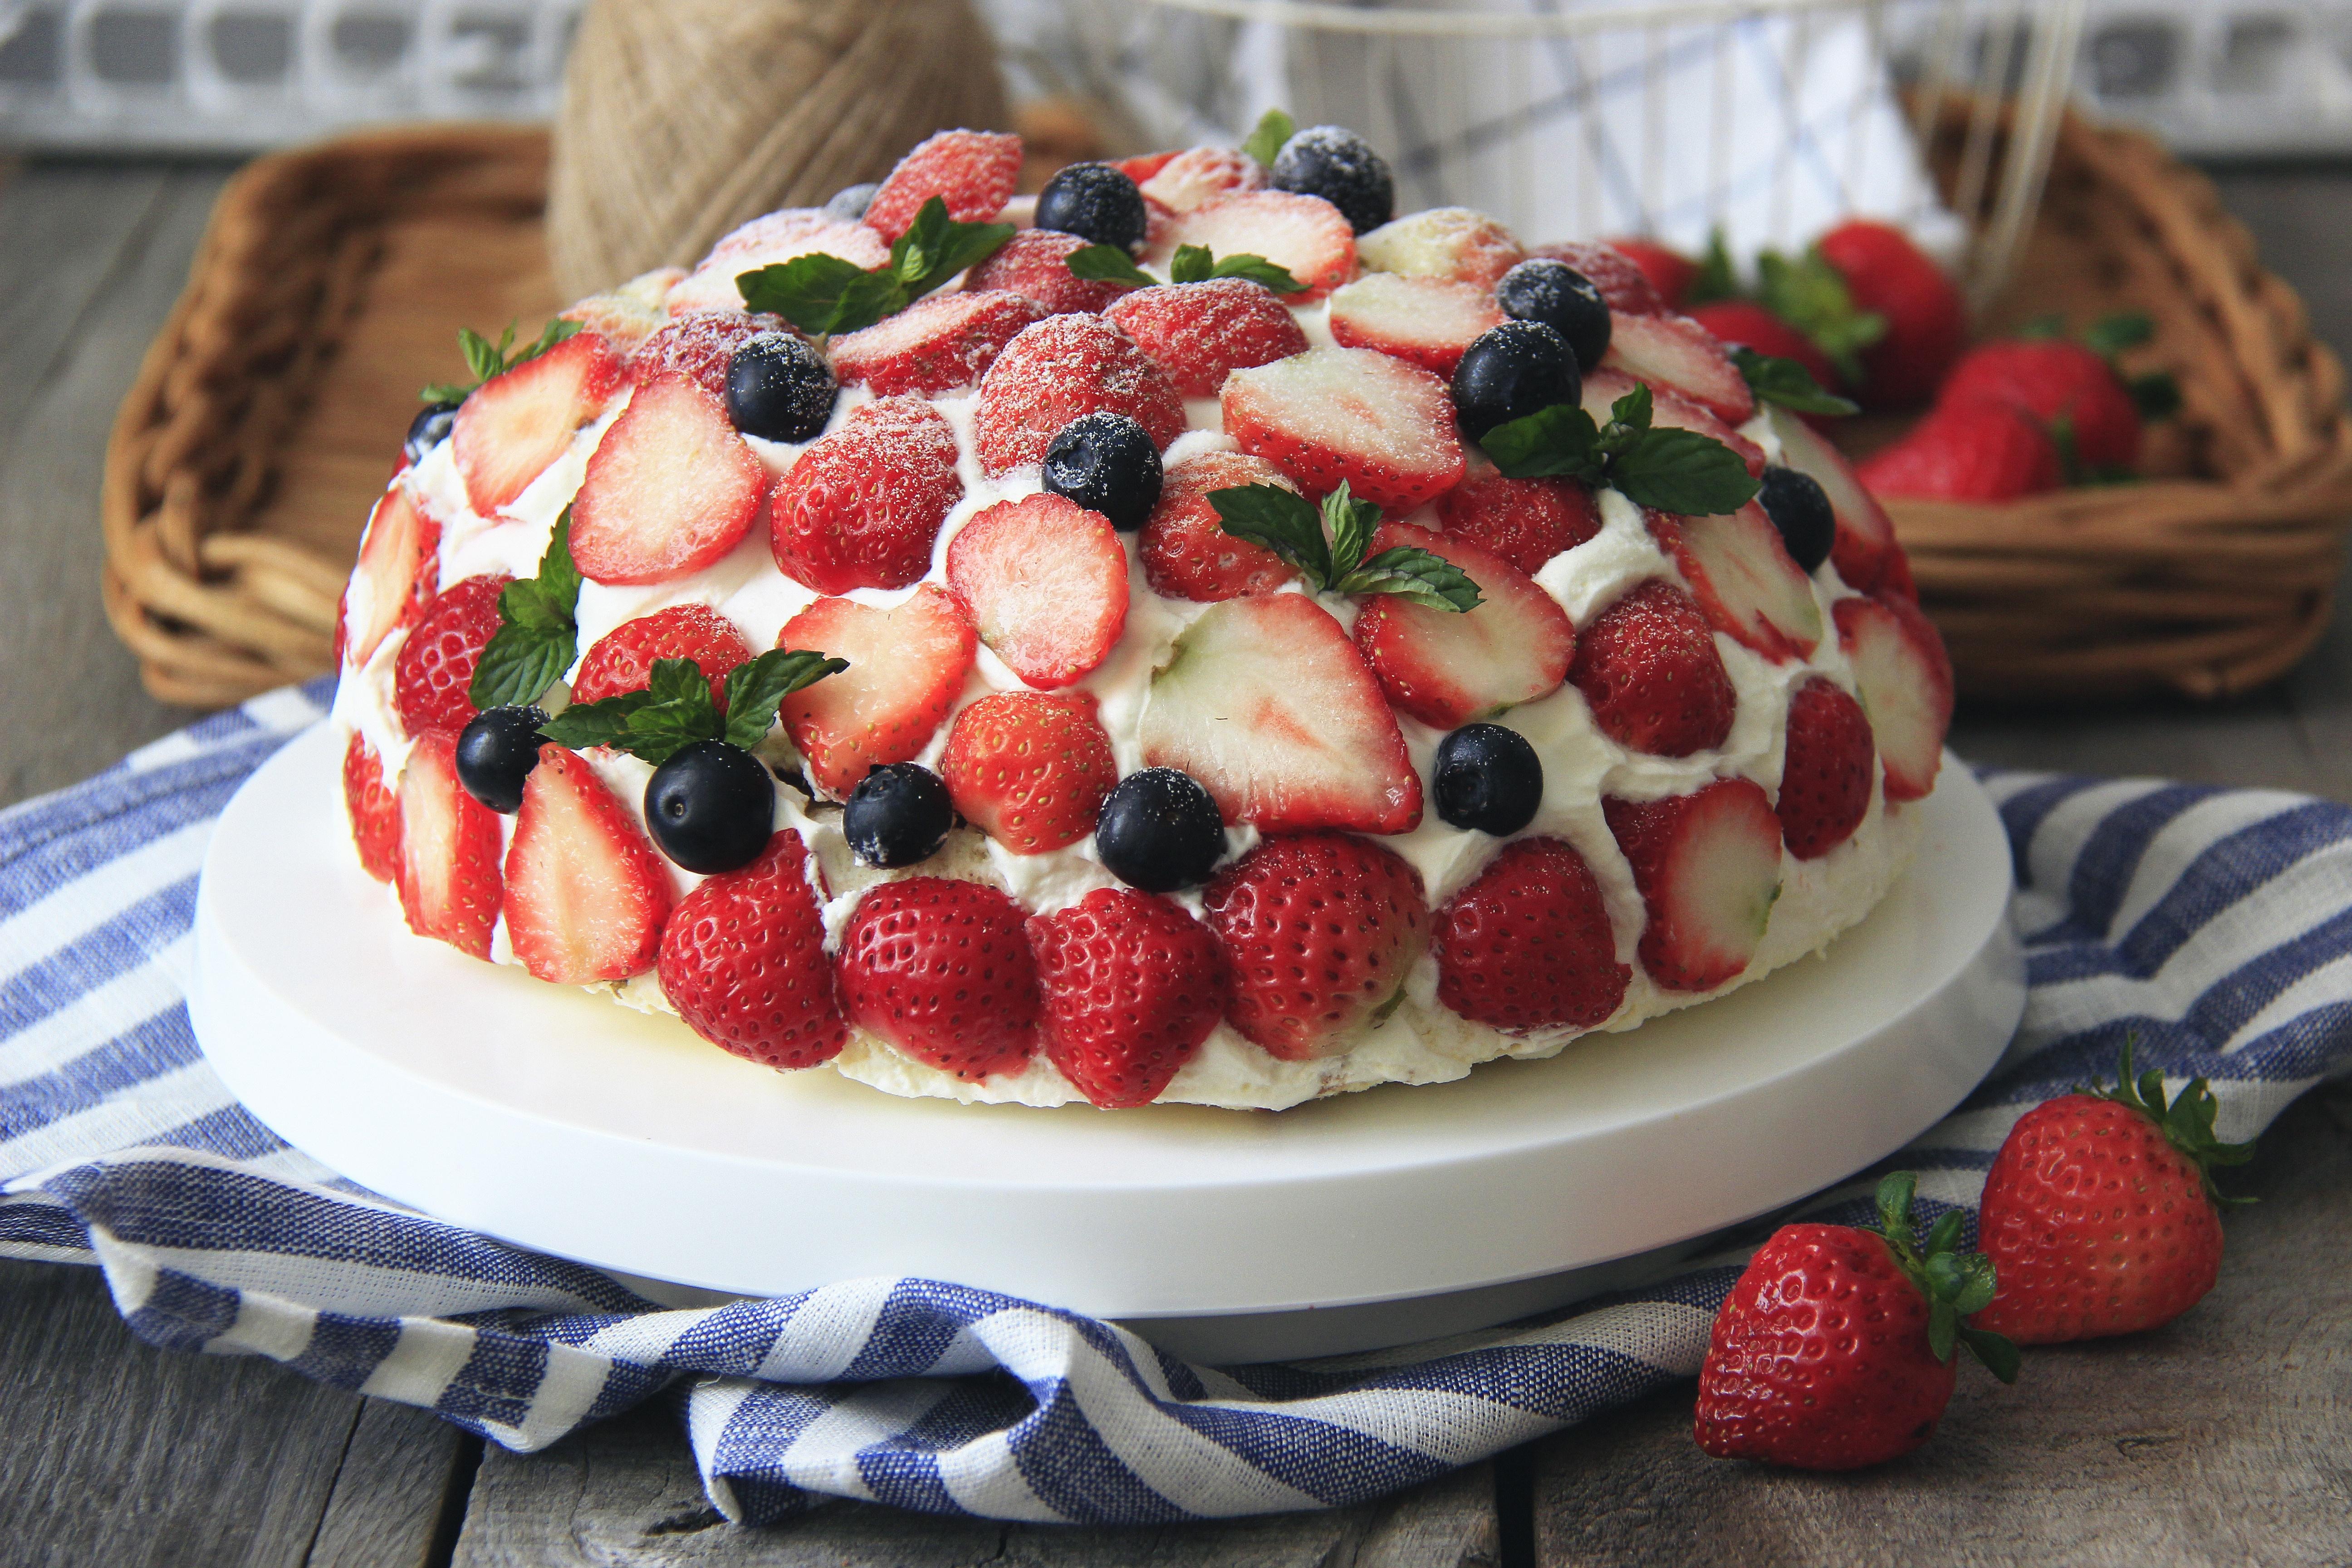 草莓巨蛋蛋糕的做法